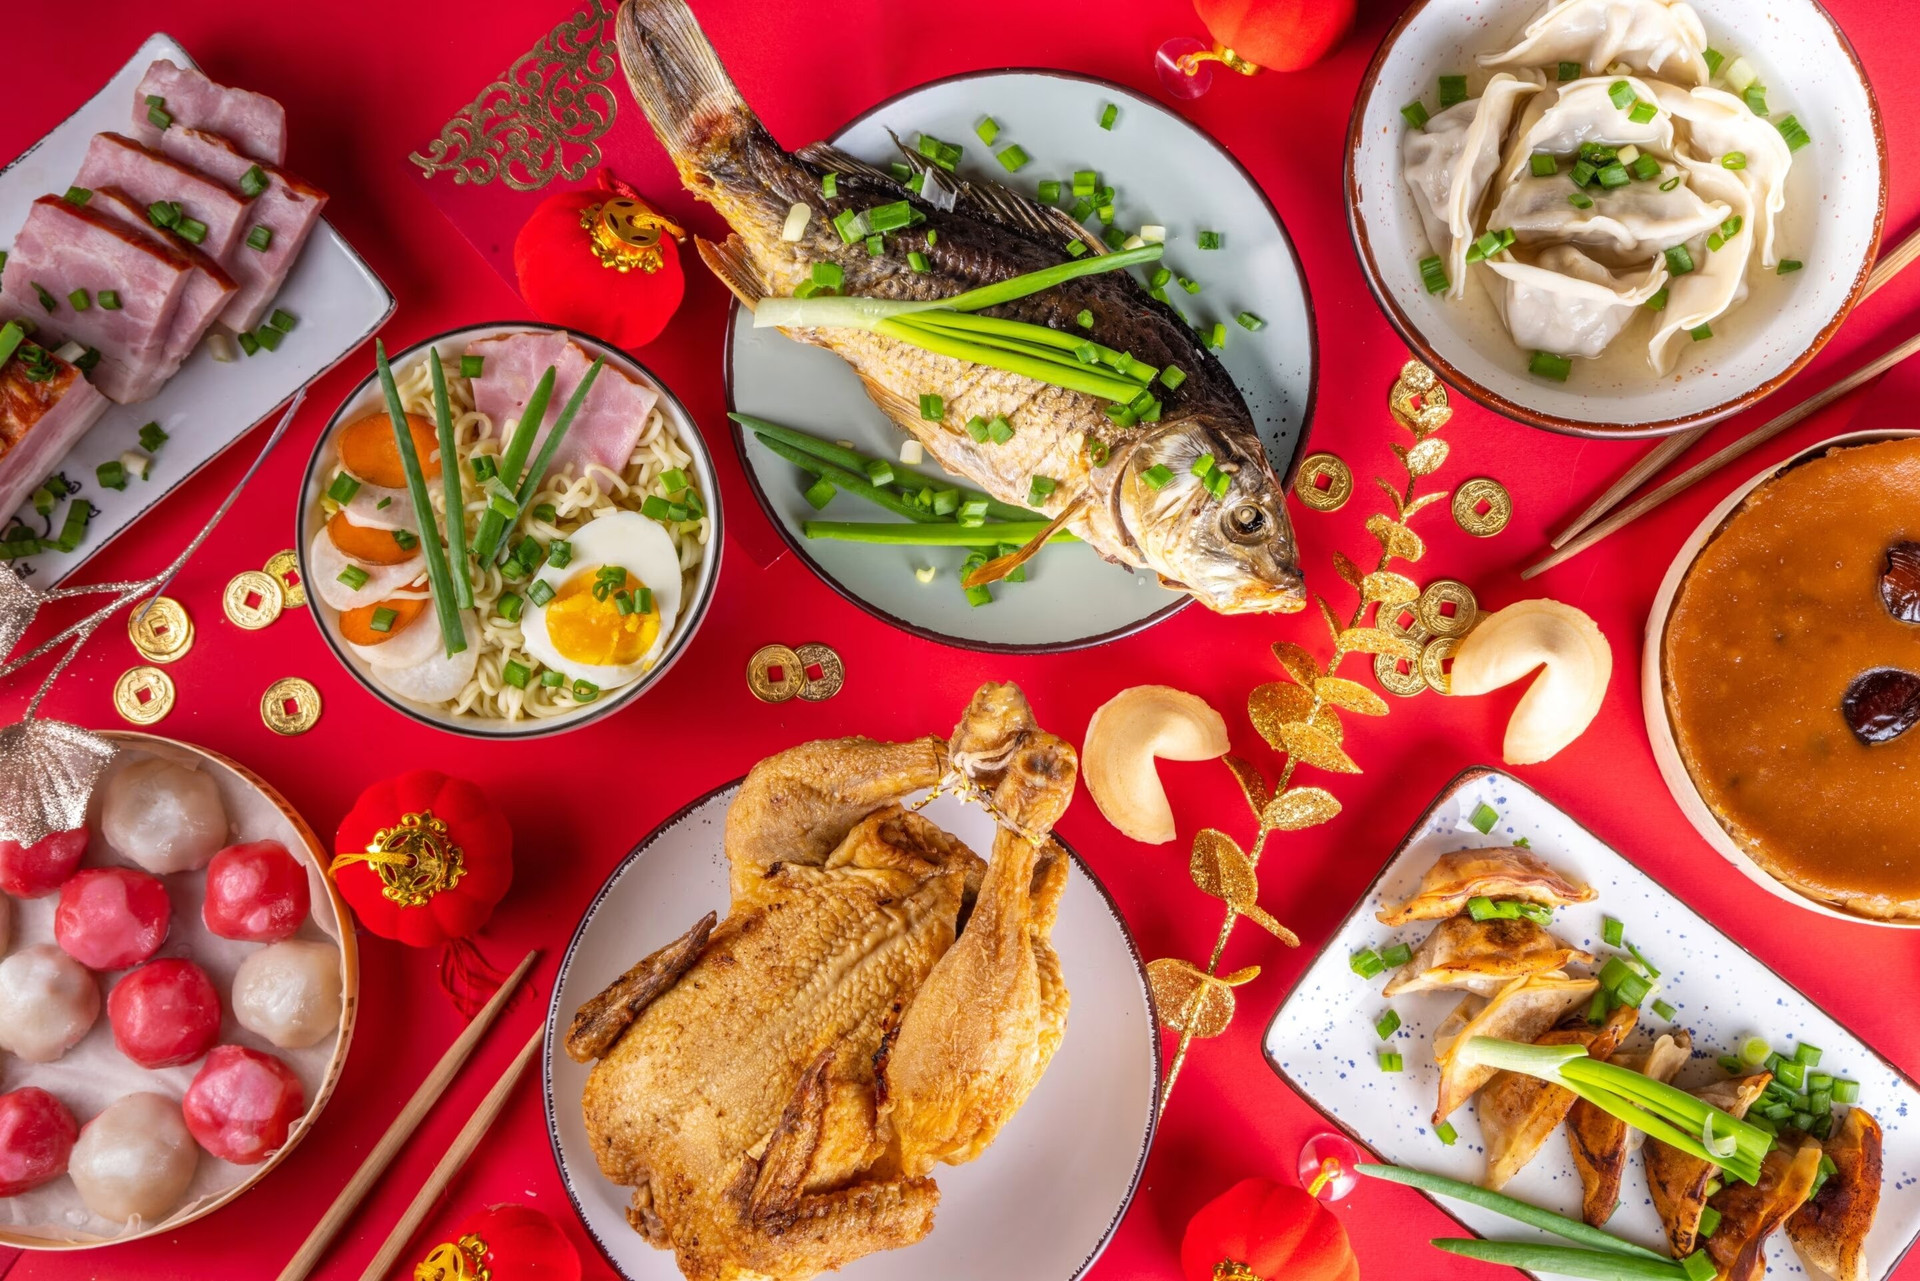 Cá rán và sủi cảo là hai món ăn đặc trưng trong mâm cỗ Tết của người Trung Quốc. (Ảnh: Knorr)